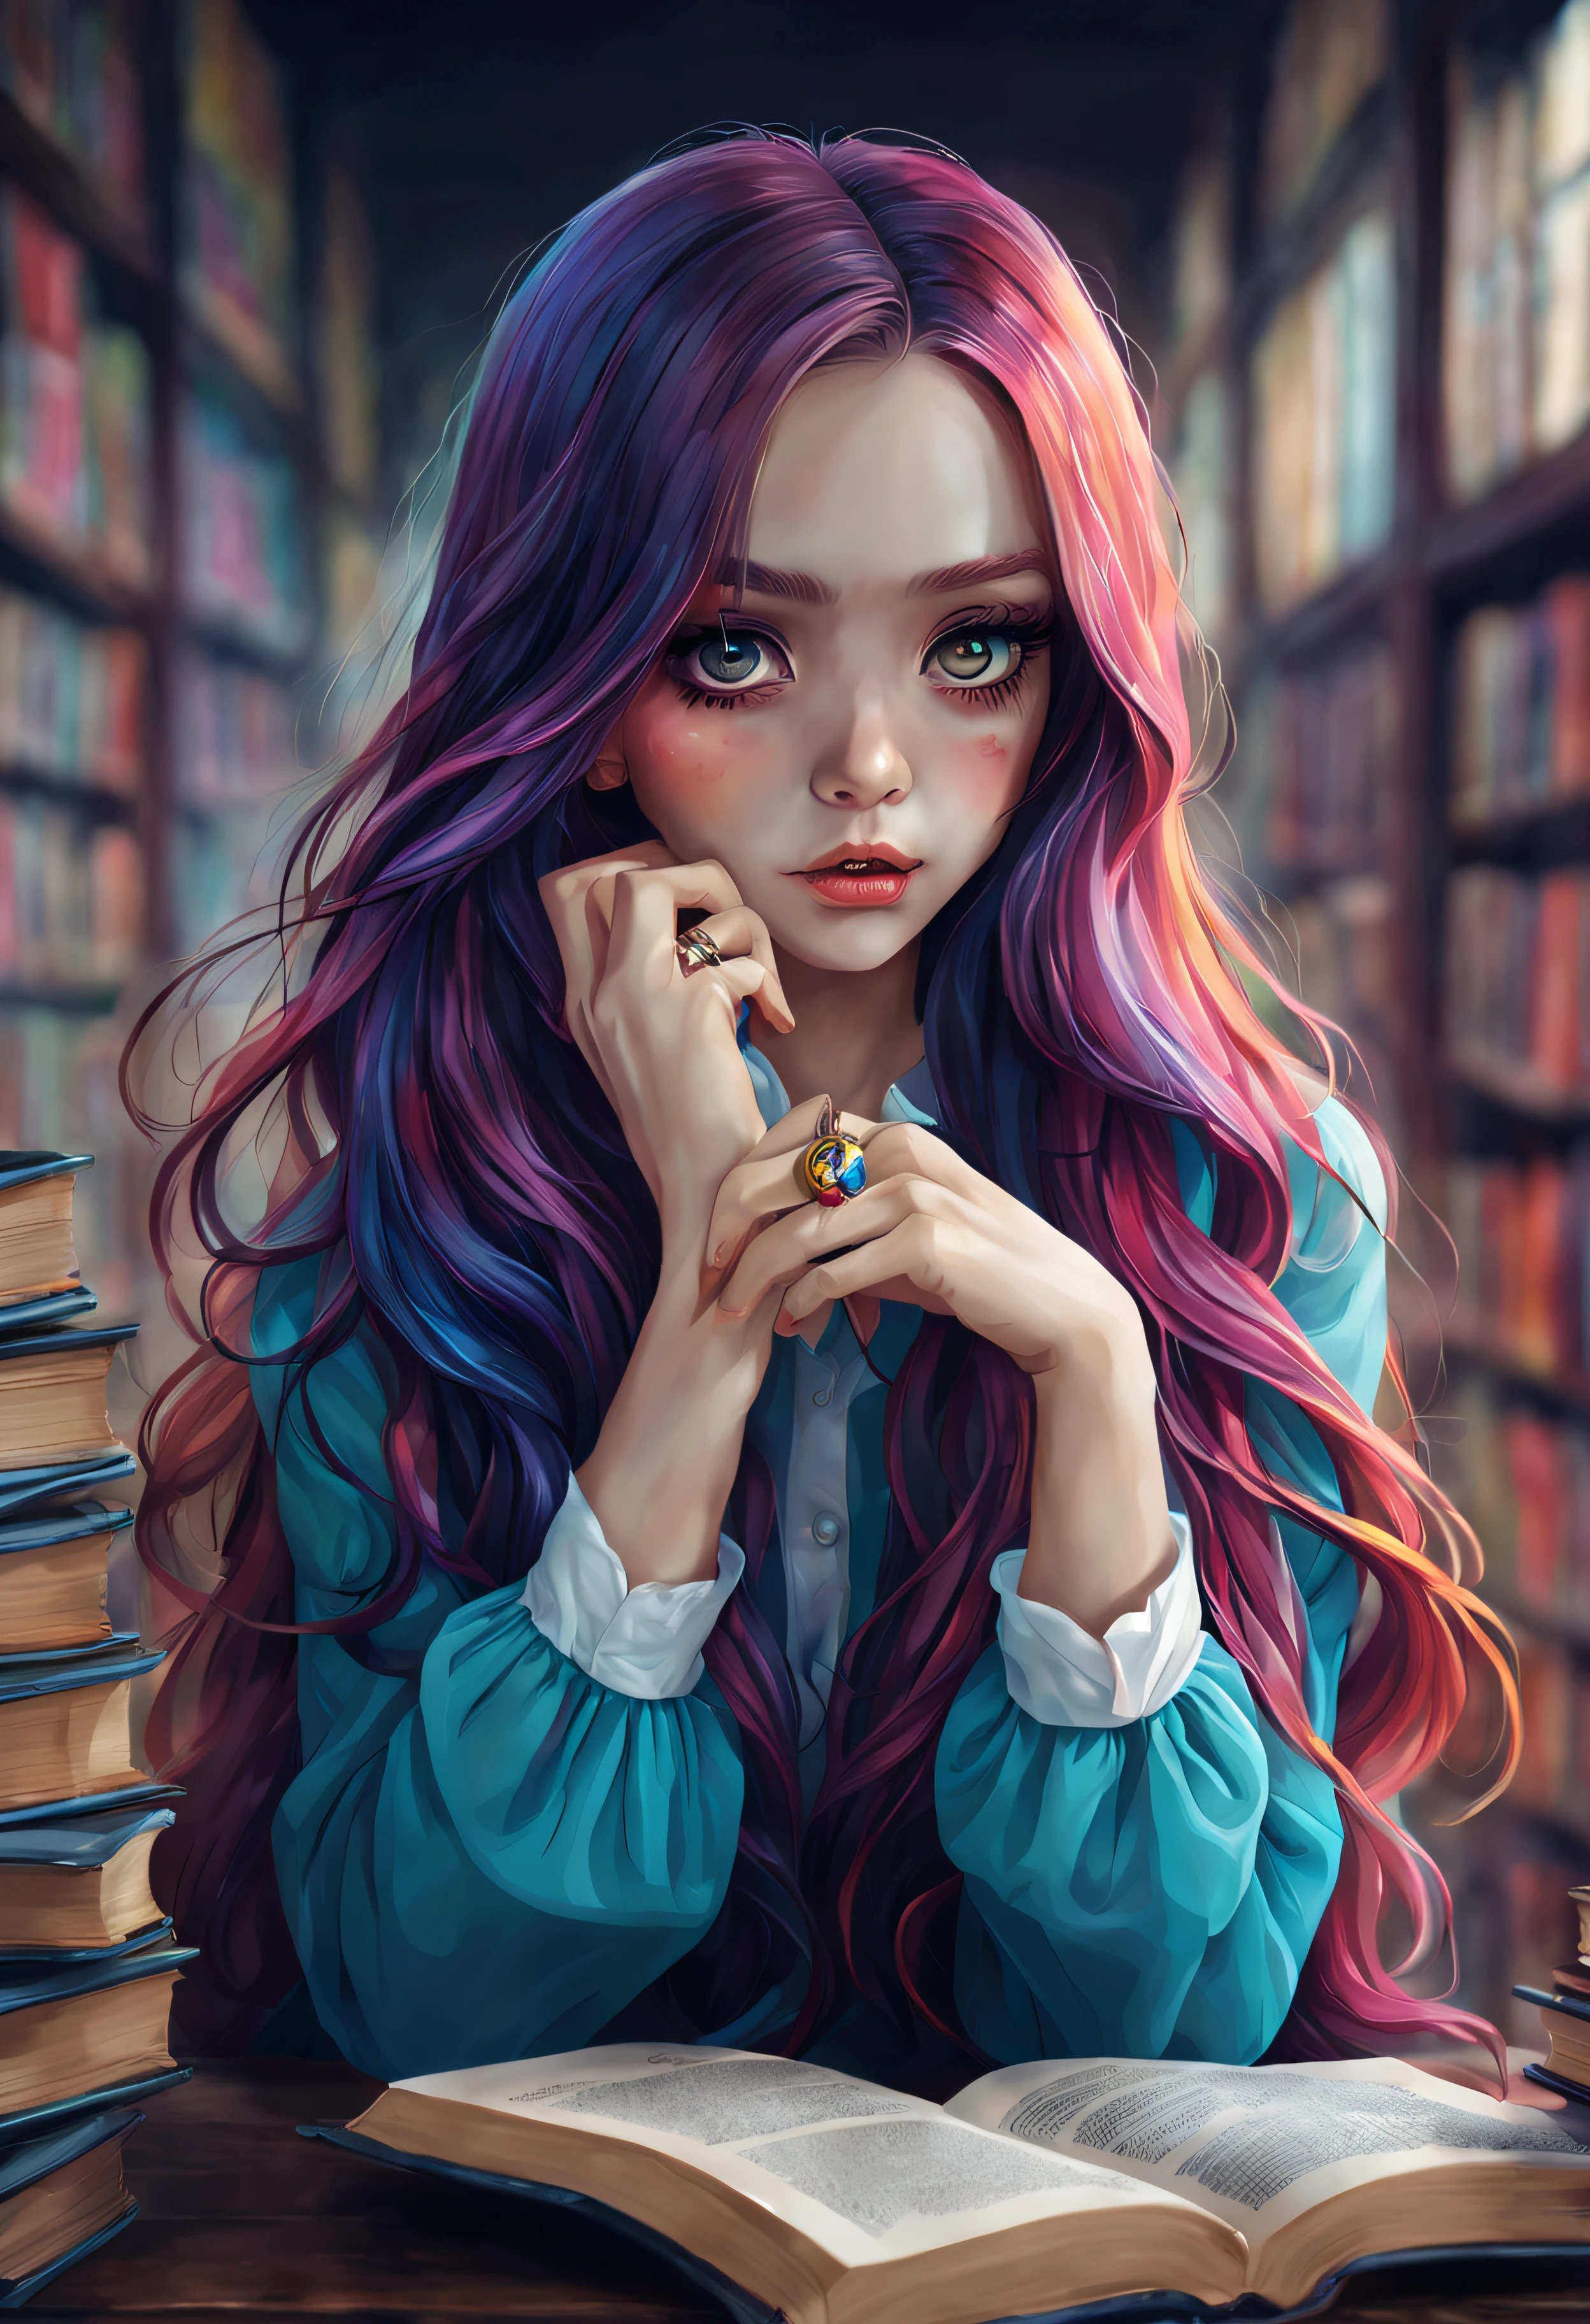 了解这个世界一切的女孩、8 种观点、美术、幽灵般的、图书馆背景、美丽的眼睛、优美的姿态、漂亮的彩色长发、主题深度、细节刻画、桌上、(平面色彩:1.3)、(色彩缤纷:1.8)、(戒指:1.2)